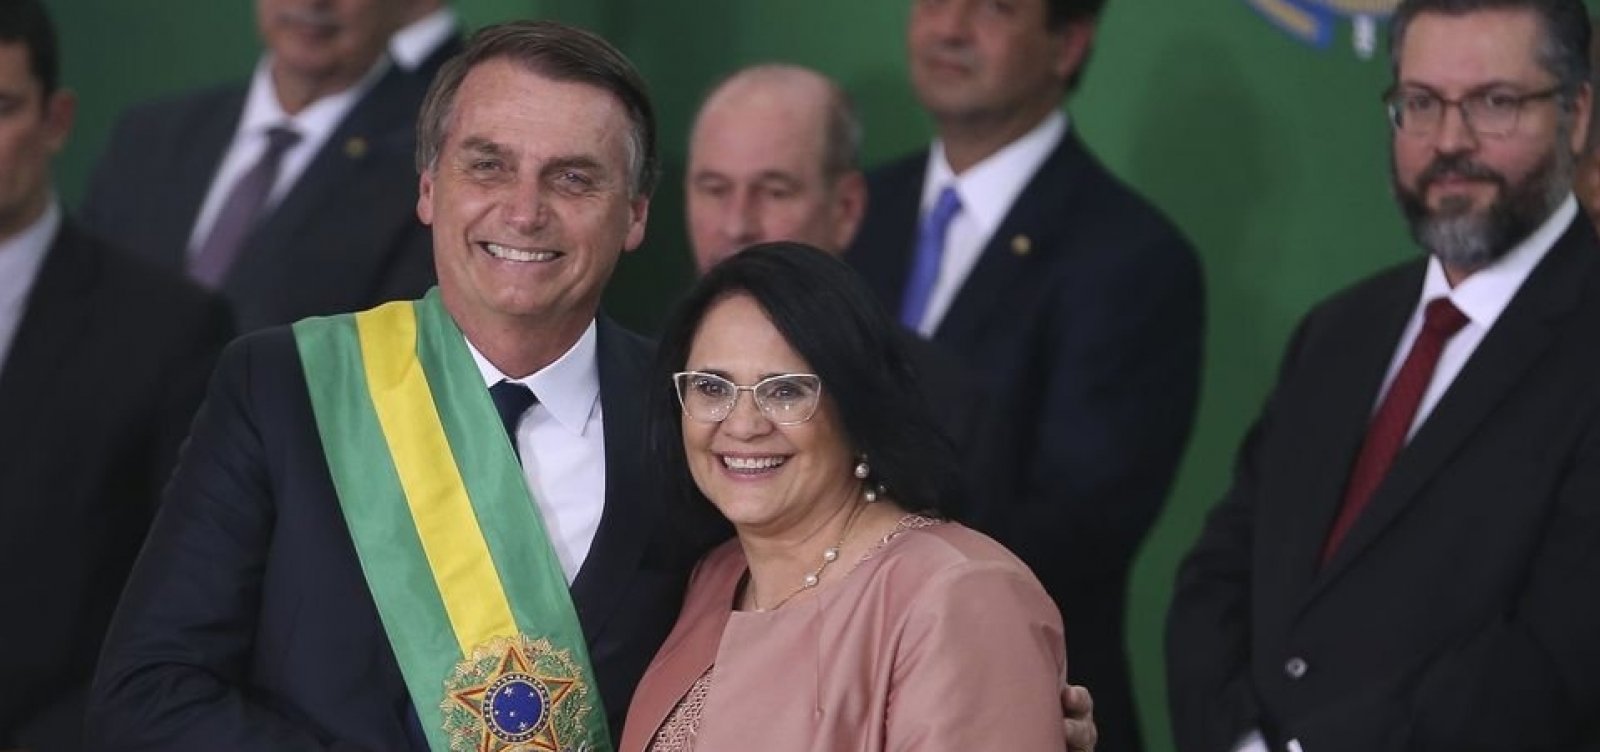 'Menino veste azul e menina veste rosa', diz ministra sobre 'nova era' no Brasil